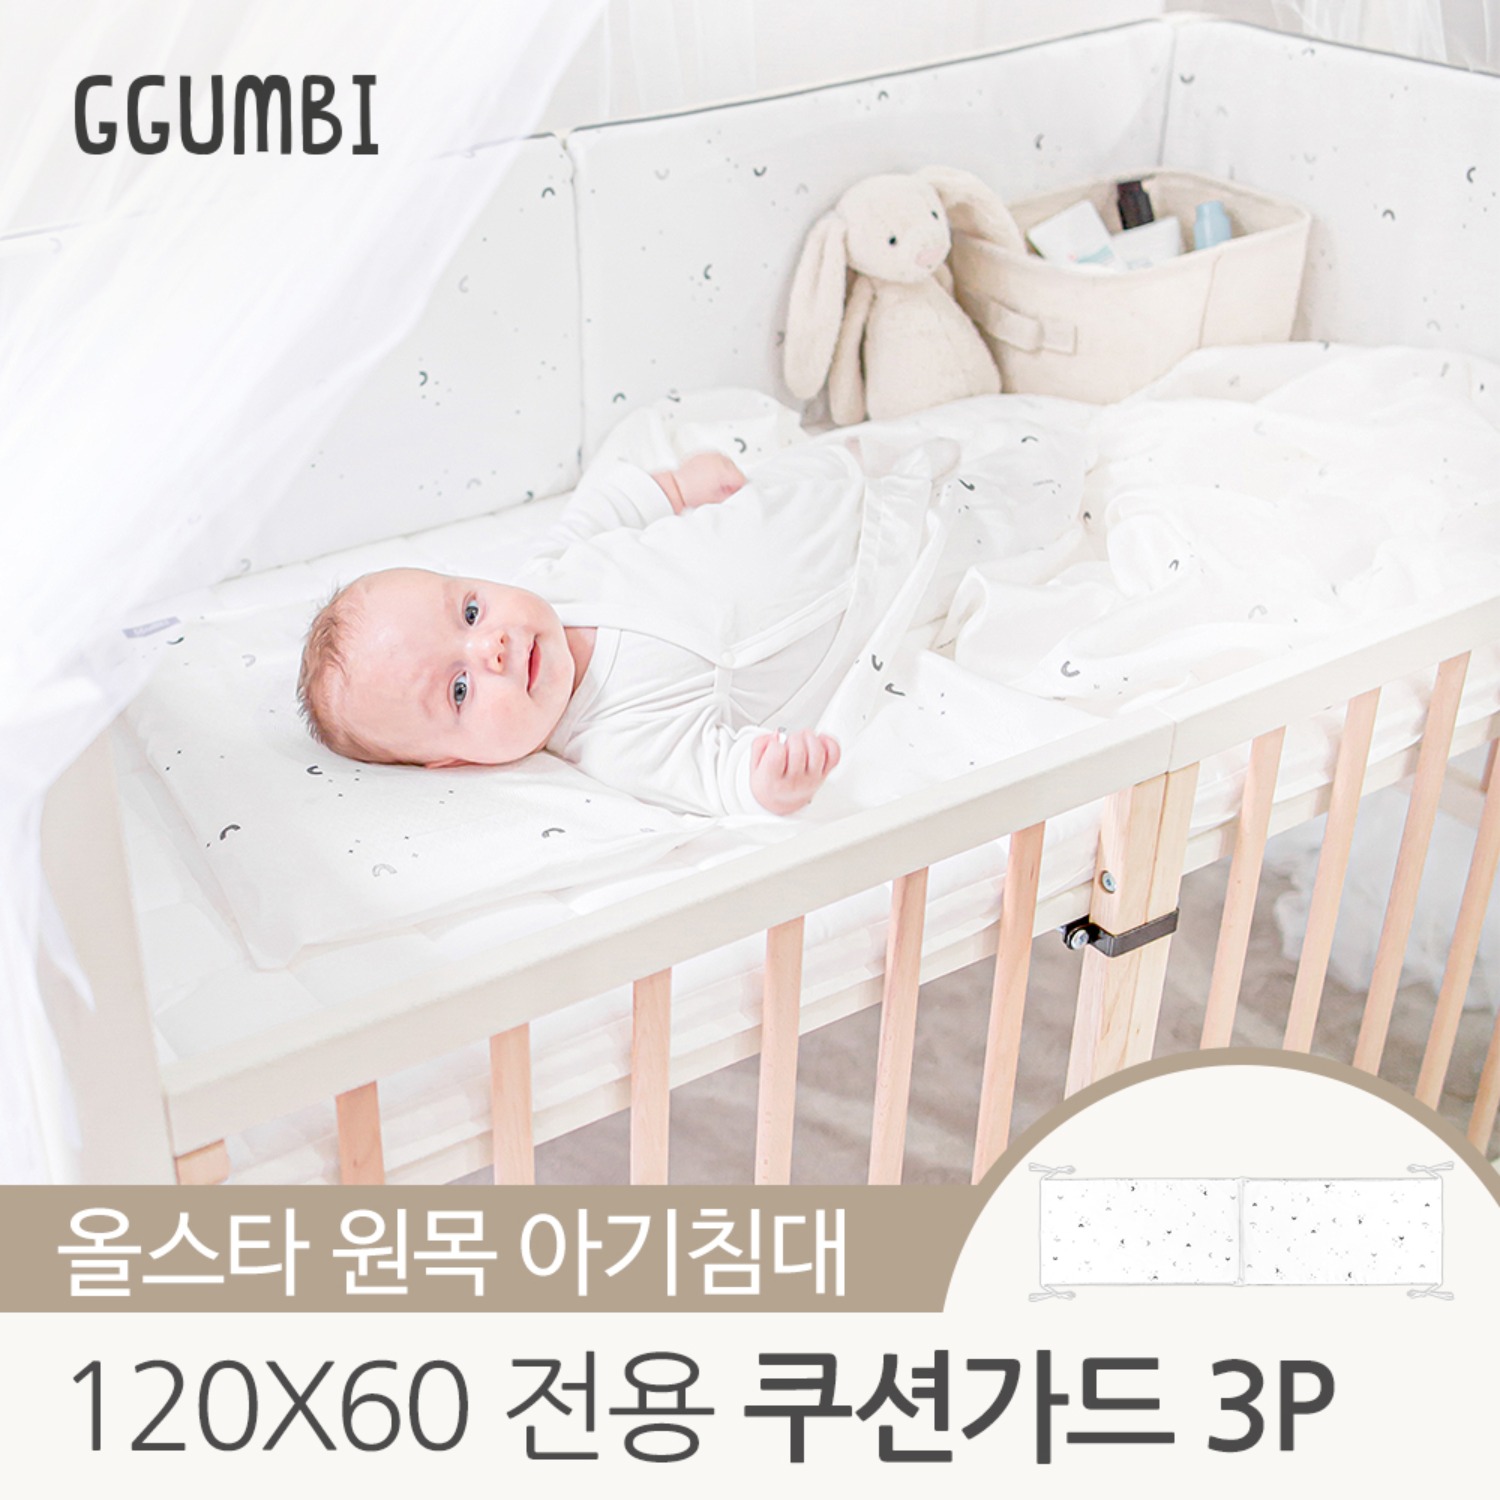 꿈비 올스타 원목 아기침대 전용 쿠션가드 3p